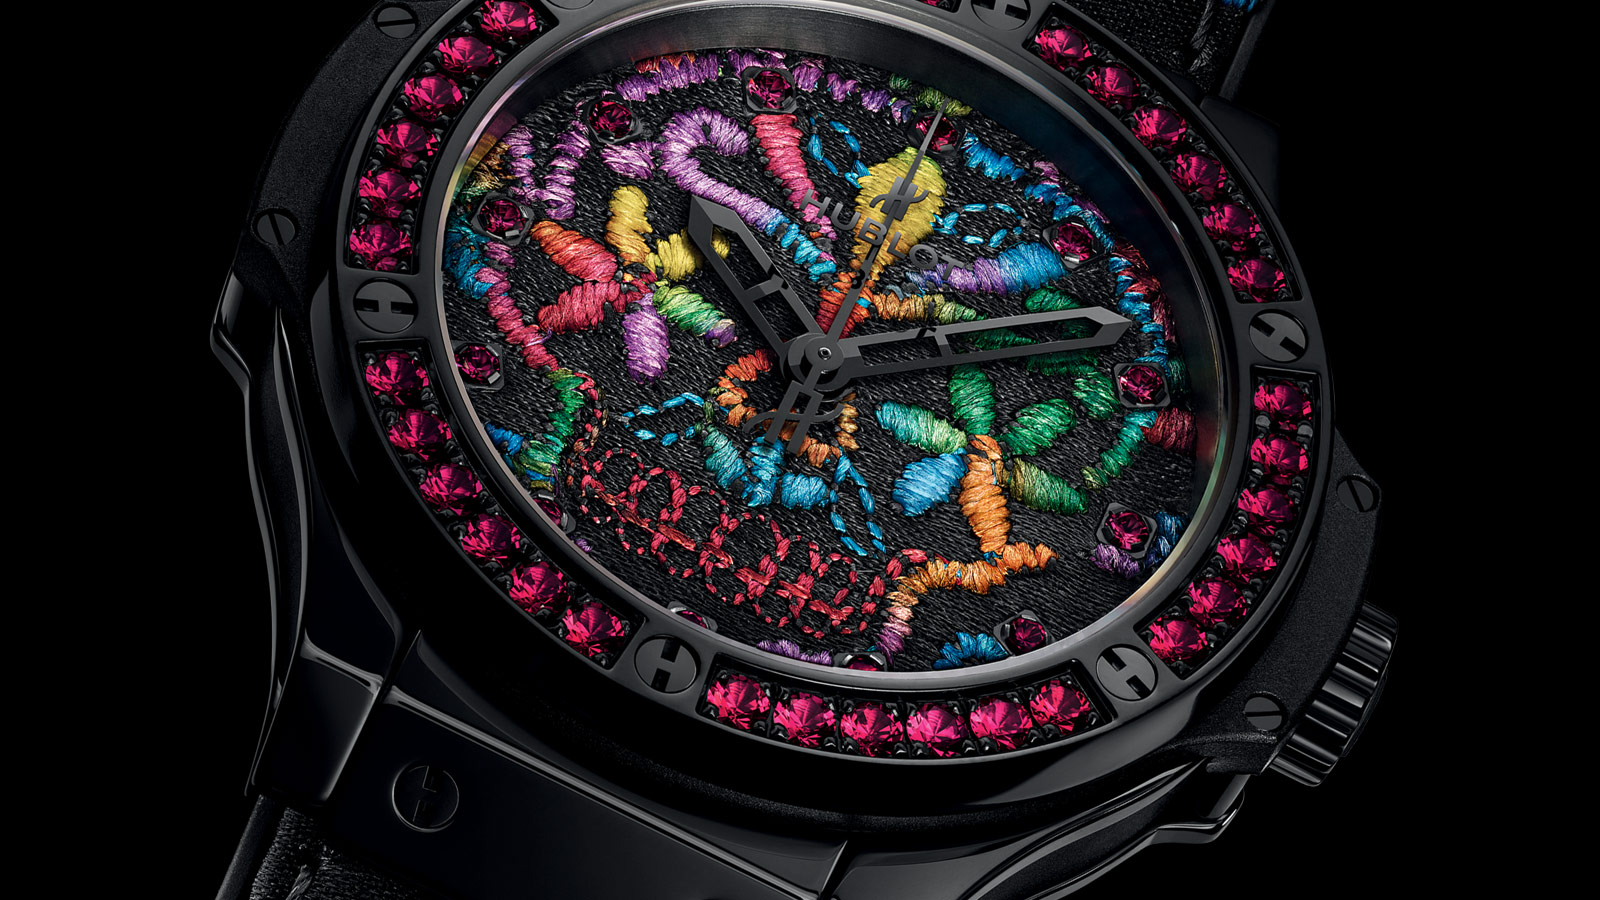 हबलोत घड़ी - 2016 में लॉन्च की गई सबसे असामान्य घड़ियों में से एक